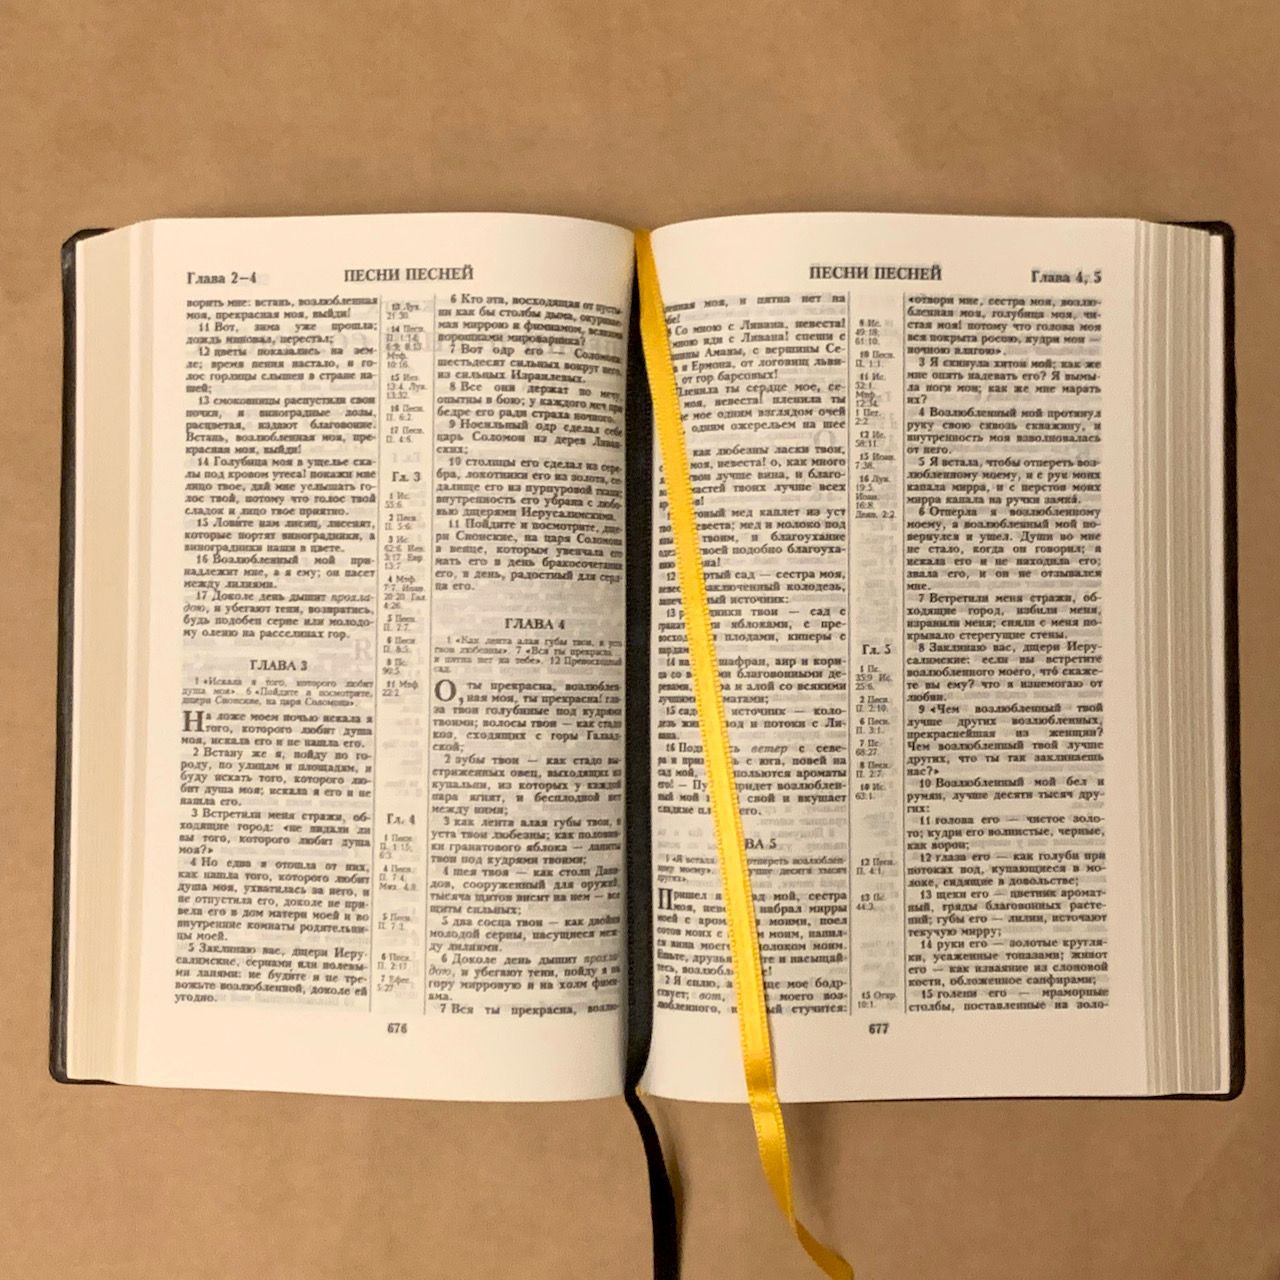 Библия 055 код B1 7073 переплет из искусственной кожи,  цвет черный, дизайн "золотая рамка с орнаментом по контуру", надпись "Библия", средний формат, 140*213 мм, параллельные места по центру страницы, золотой обрез, крупный шрифт